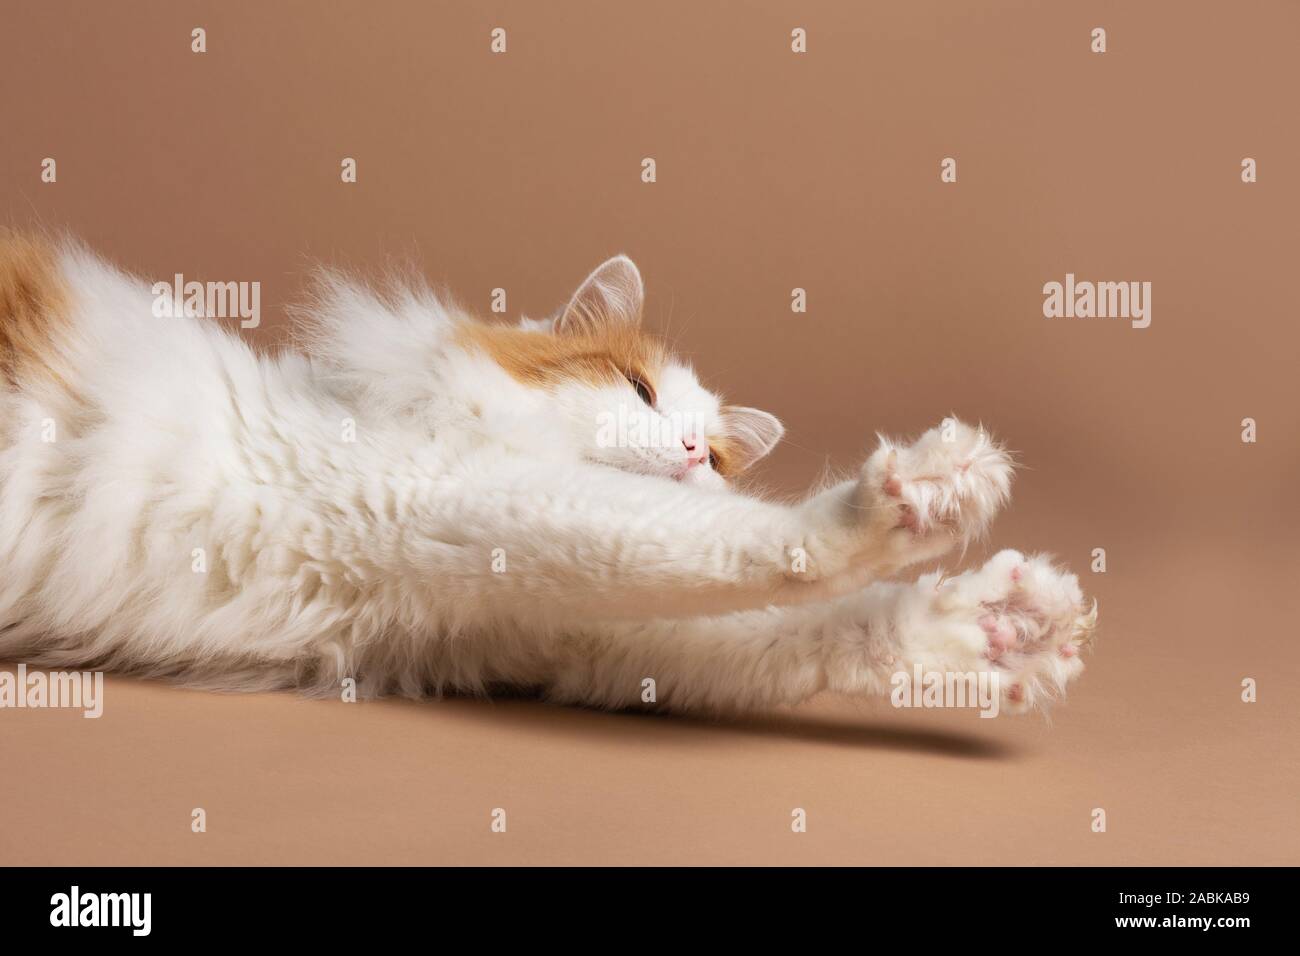 Ein nett schön weiß und braun gefärbte Türkisch Van Katze vor einem braun beige Hintergrund, strechtching und seine scharfen Krallen Horizont angezeigt Stockfoto